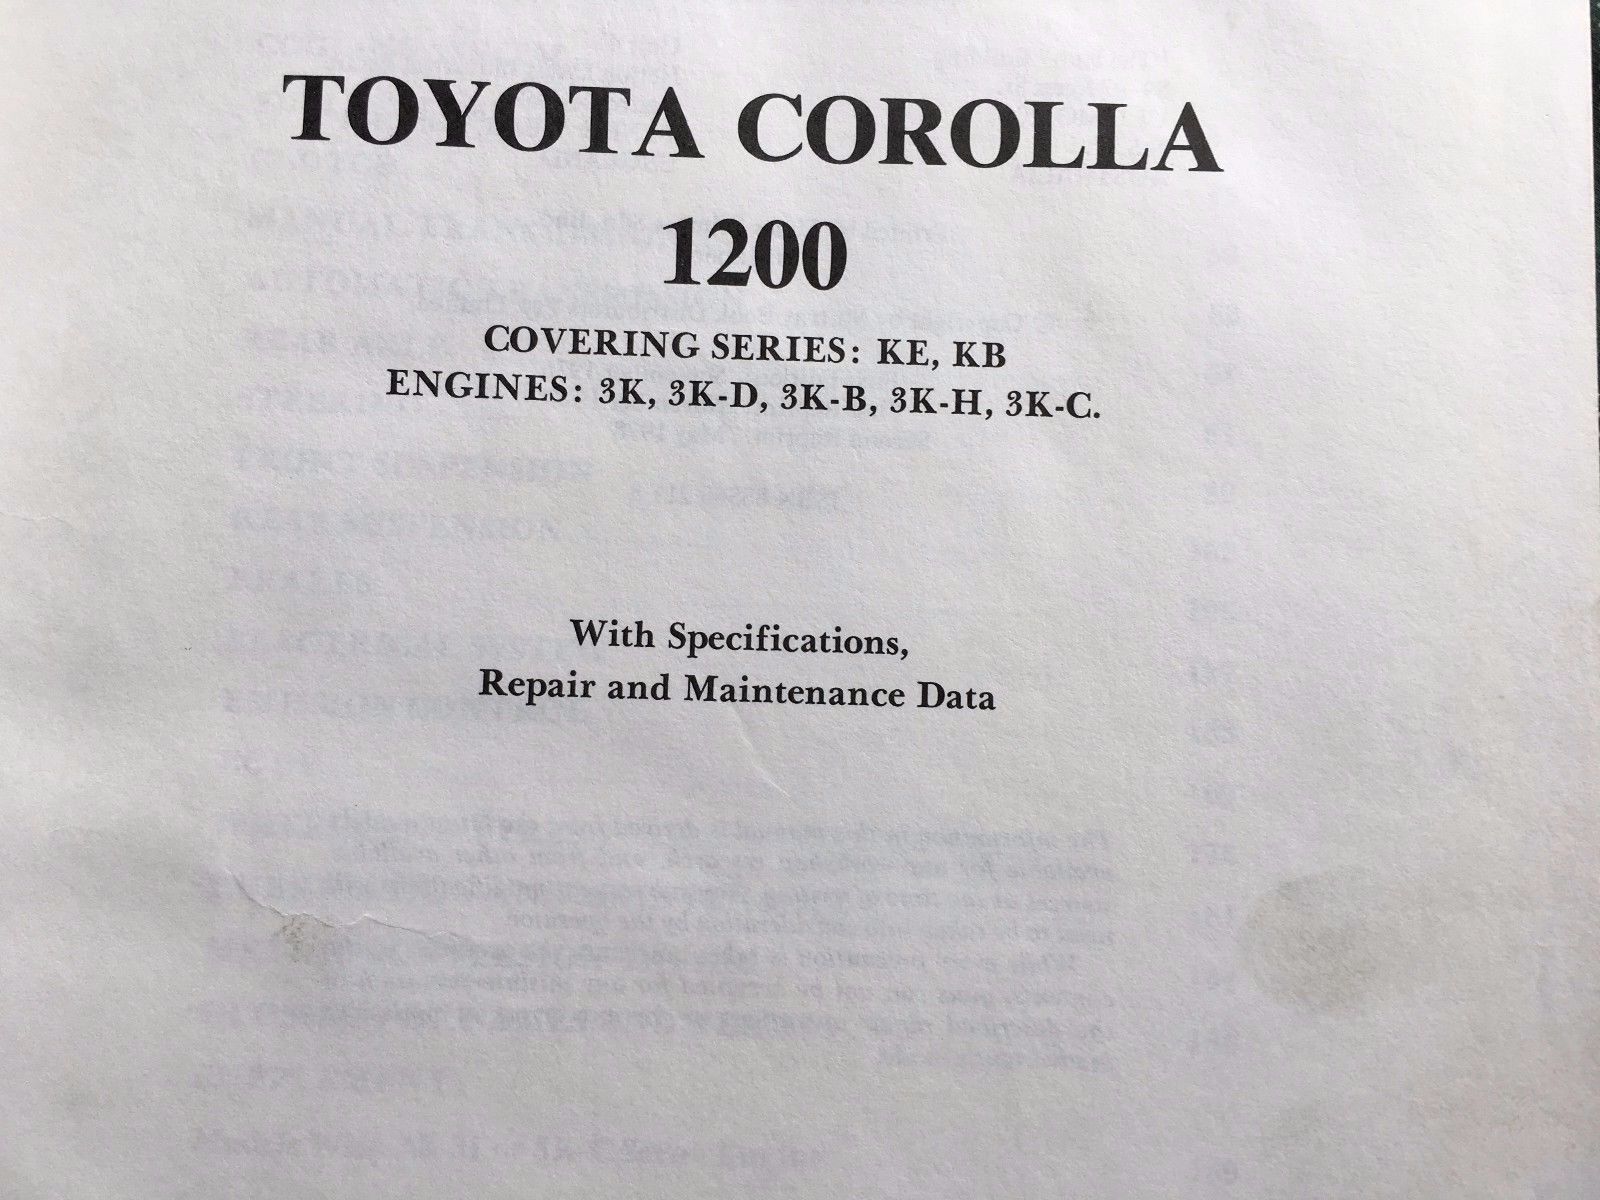 toyota corolla gregorys manual 122